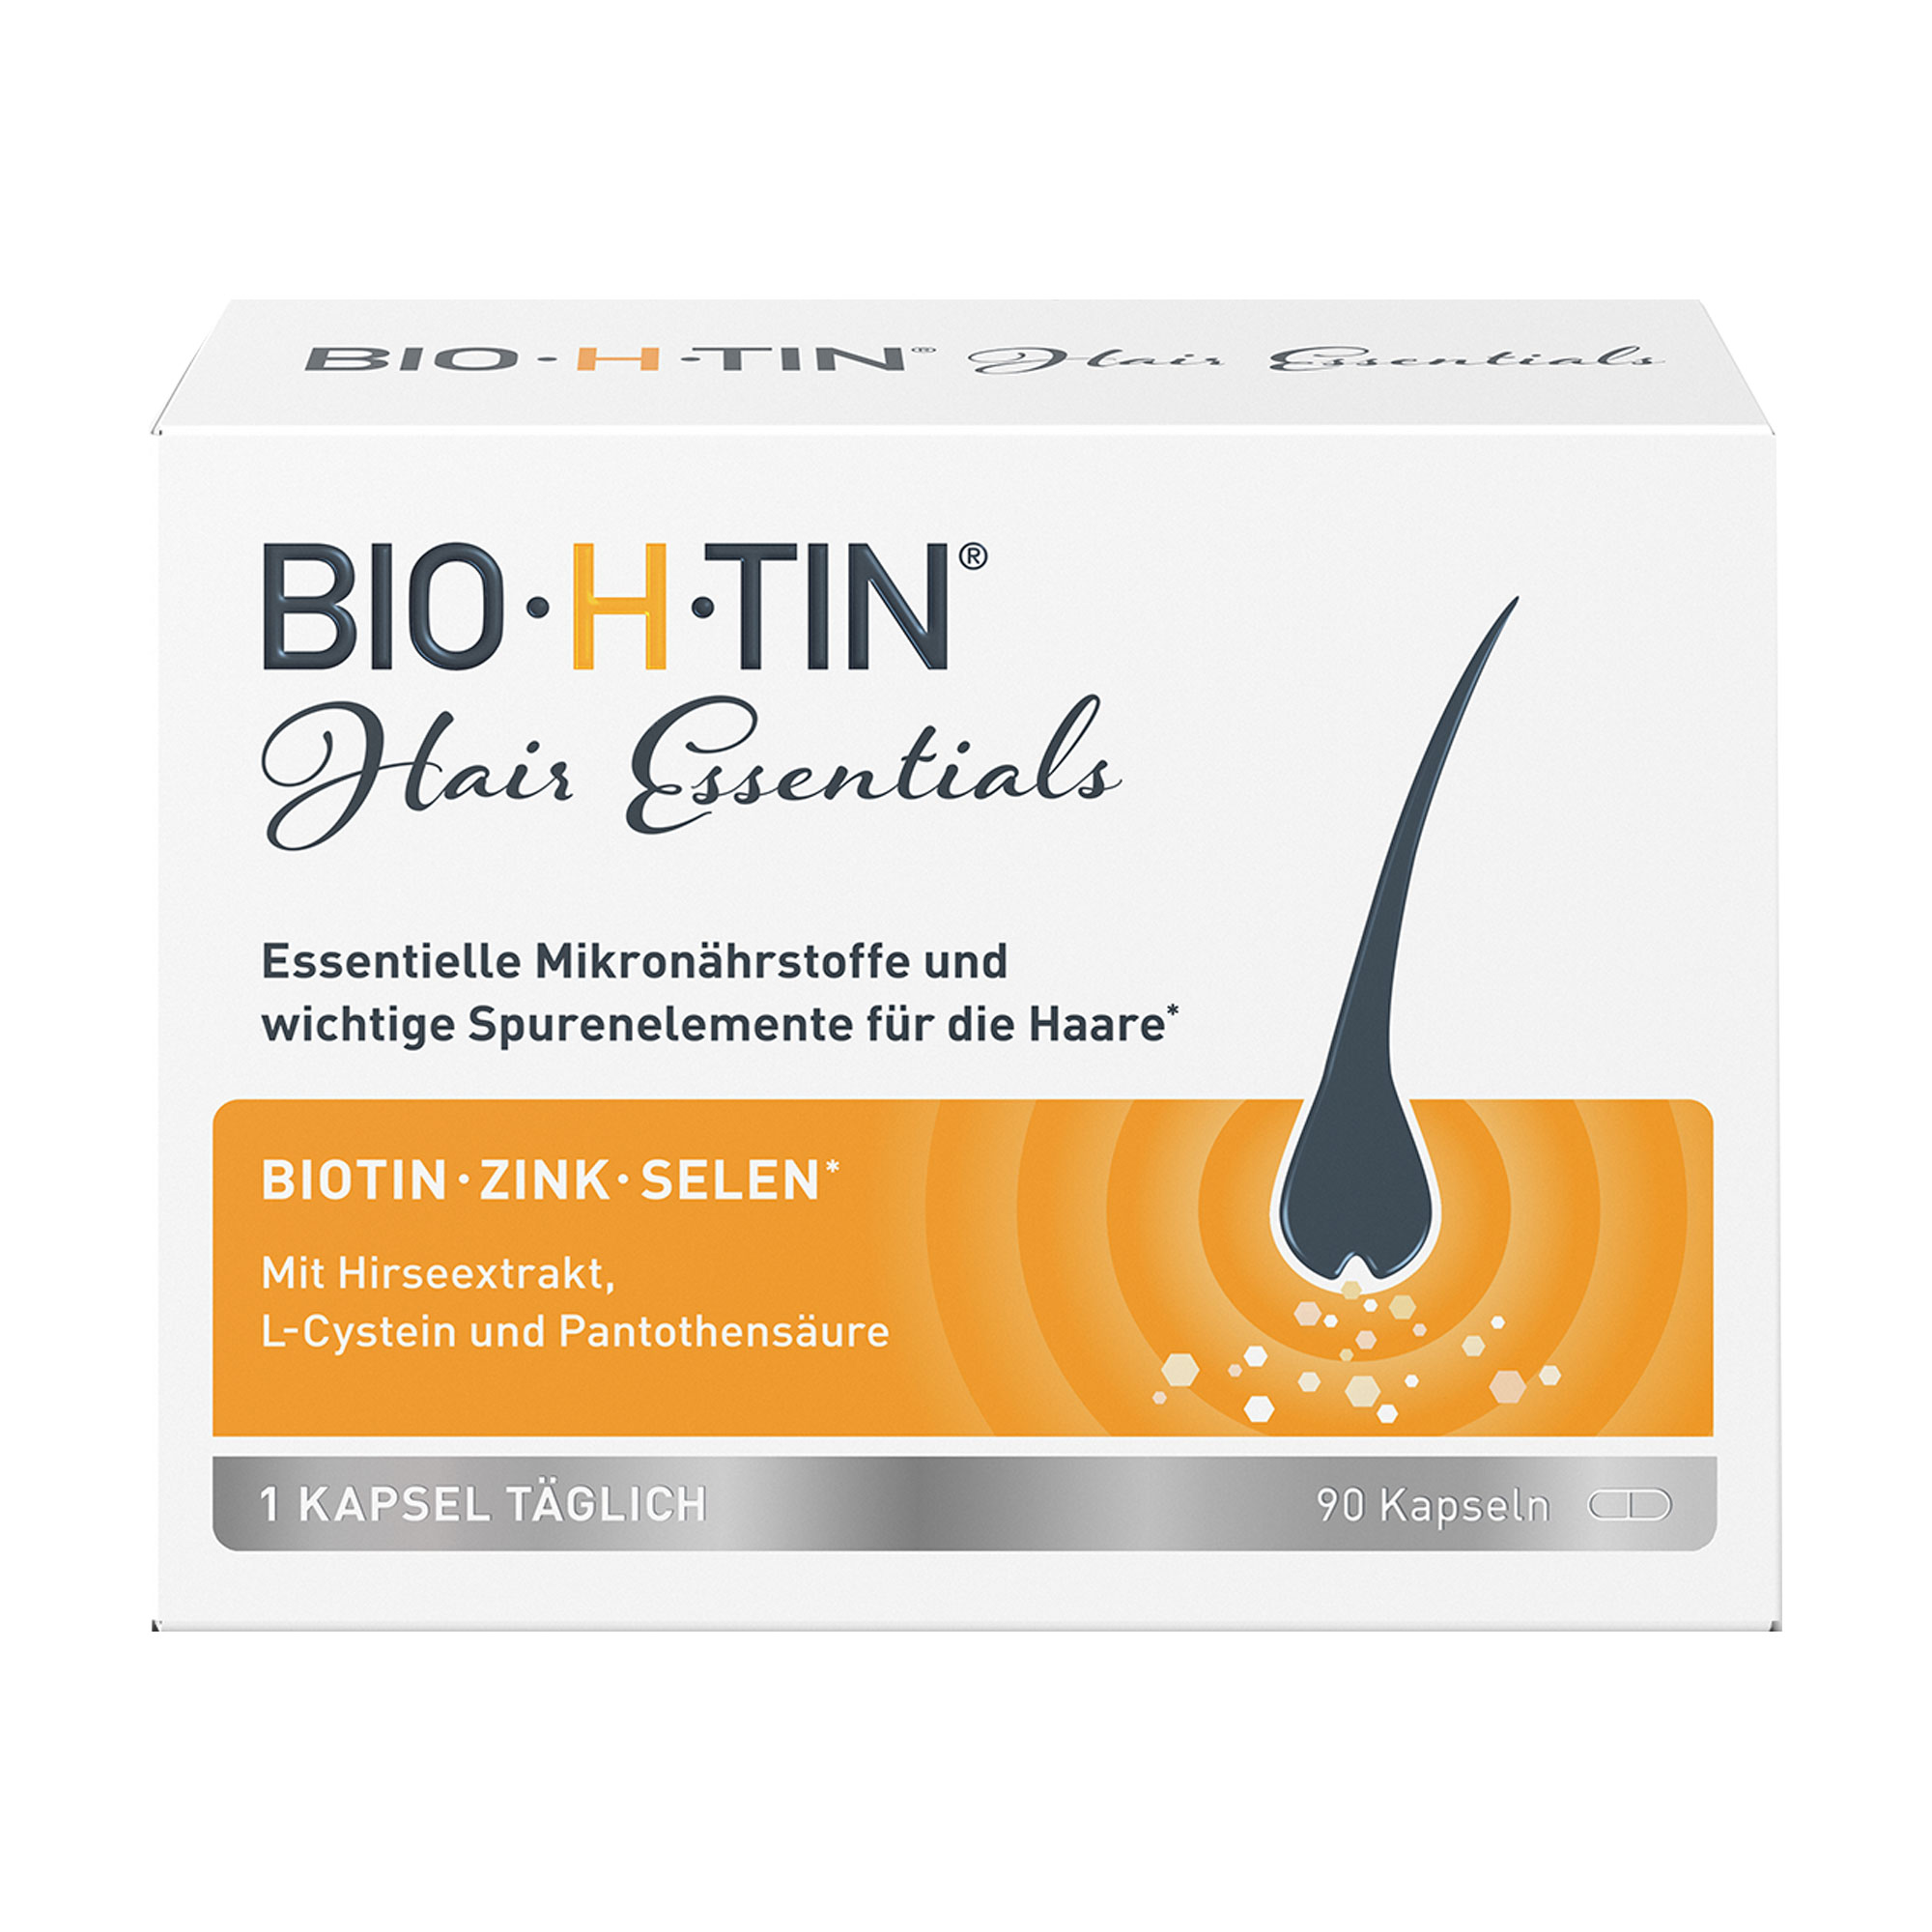 Nahrungsergänzungsmittel mit Biotin, Zink und Selen. Zur Förderung des gesunden Haarwachstums.